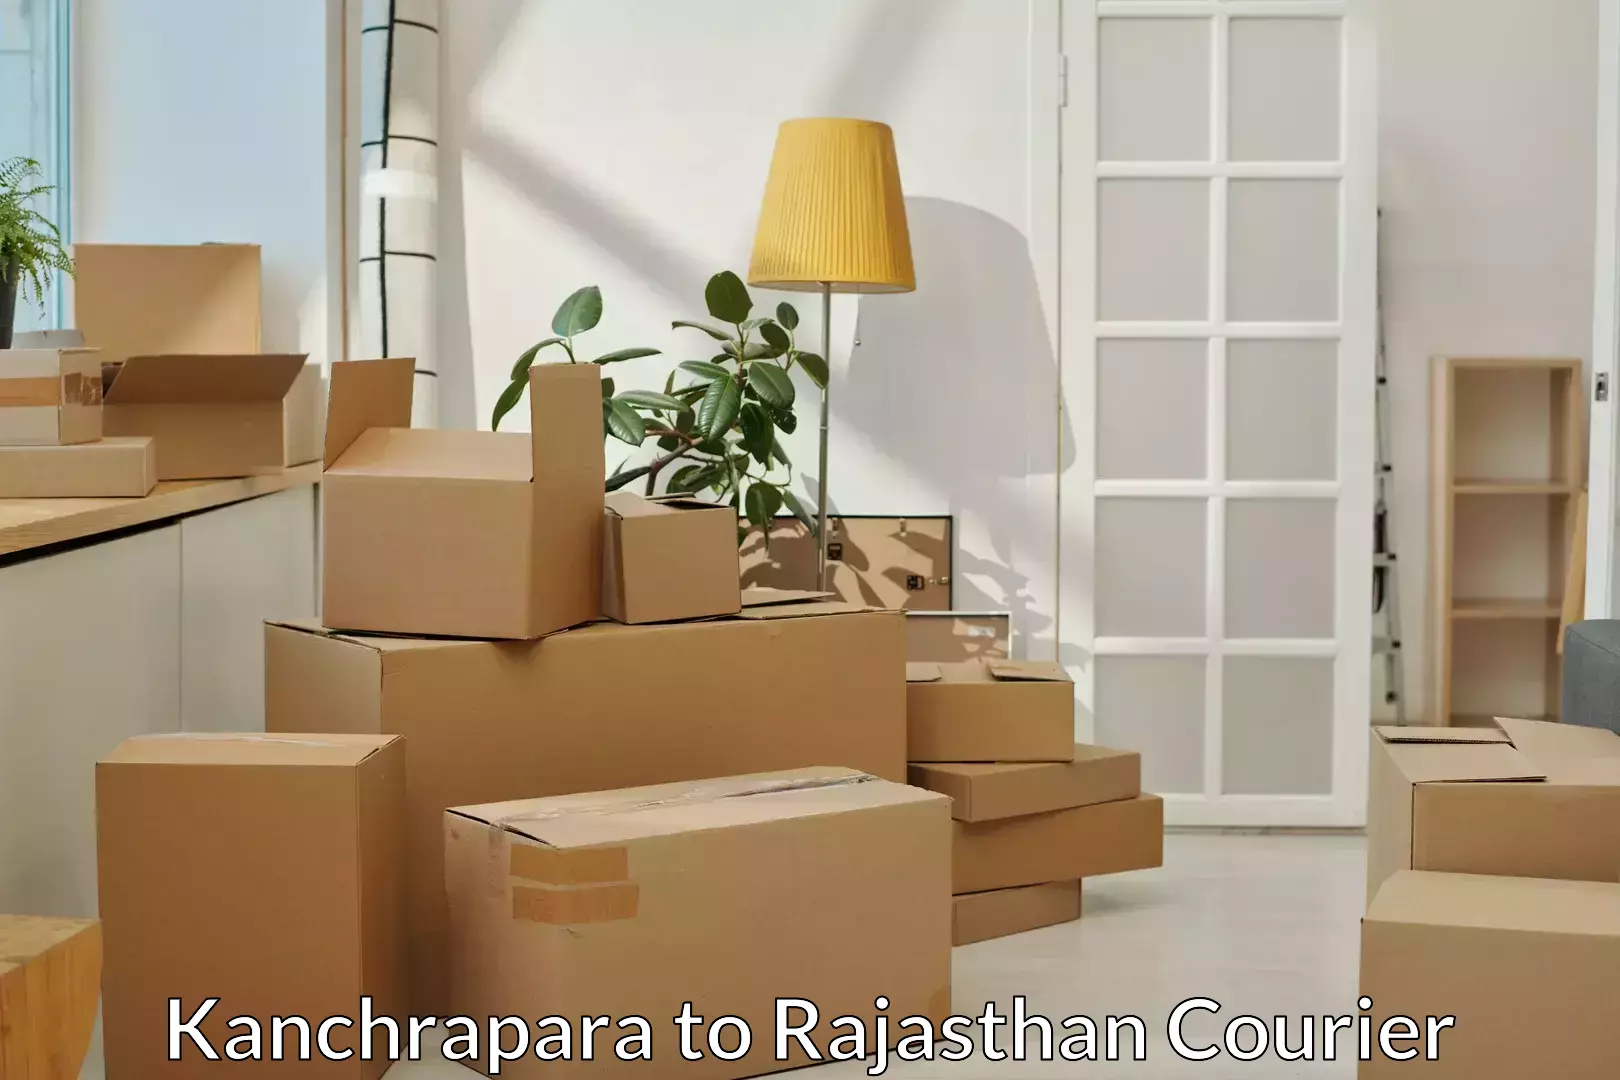 Full-service movers Kanchrapara to Rajasthan